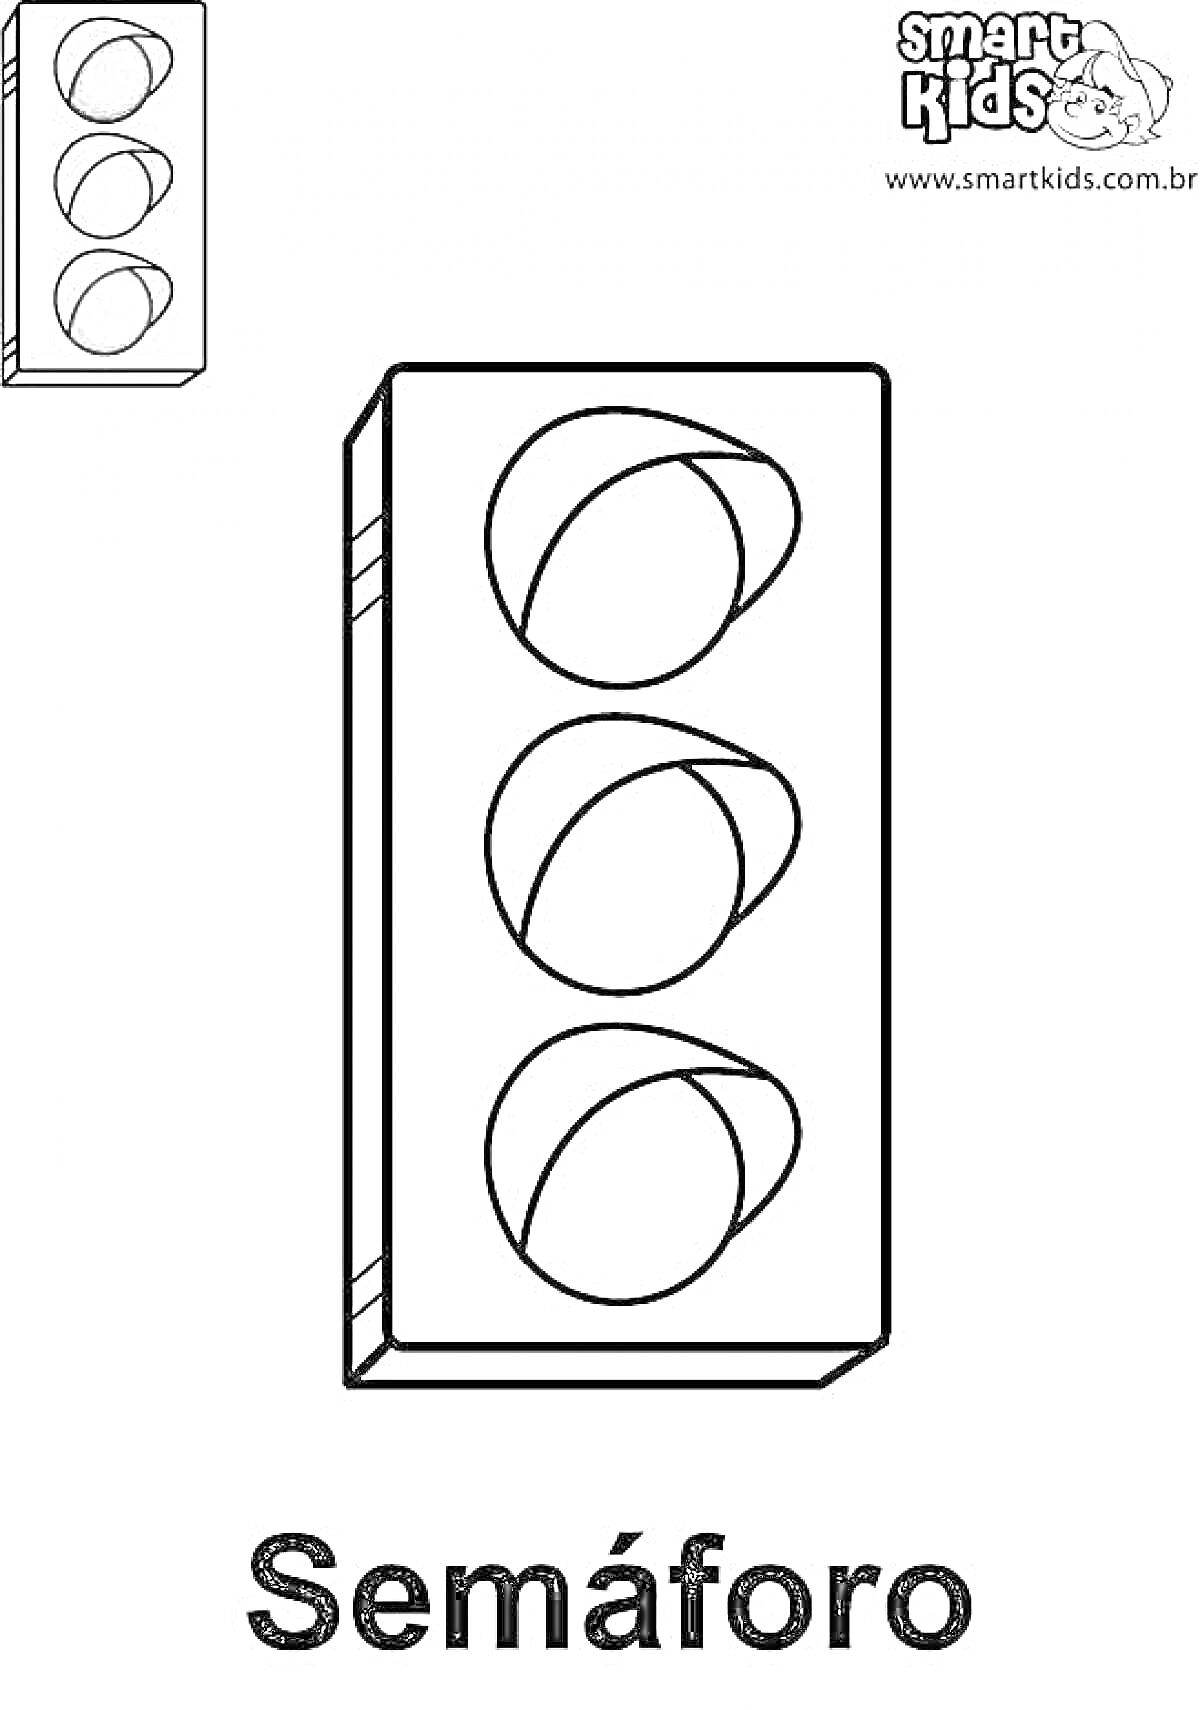 Раскраска Раскраска светофор для детей с тремя пустыми кругами и примечанием светофора с красным, жёлтым и зелёным цветами